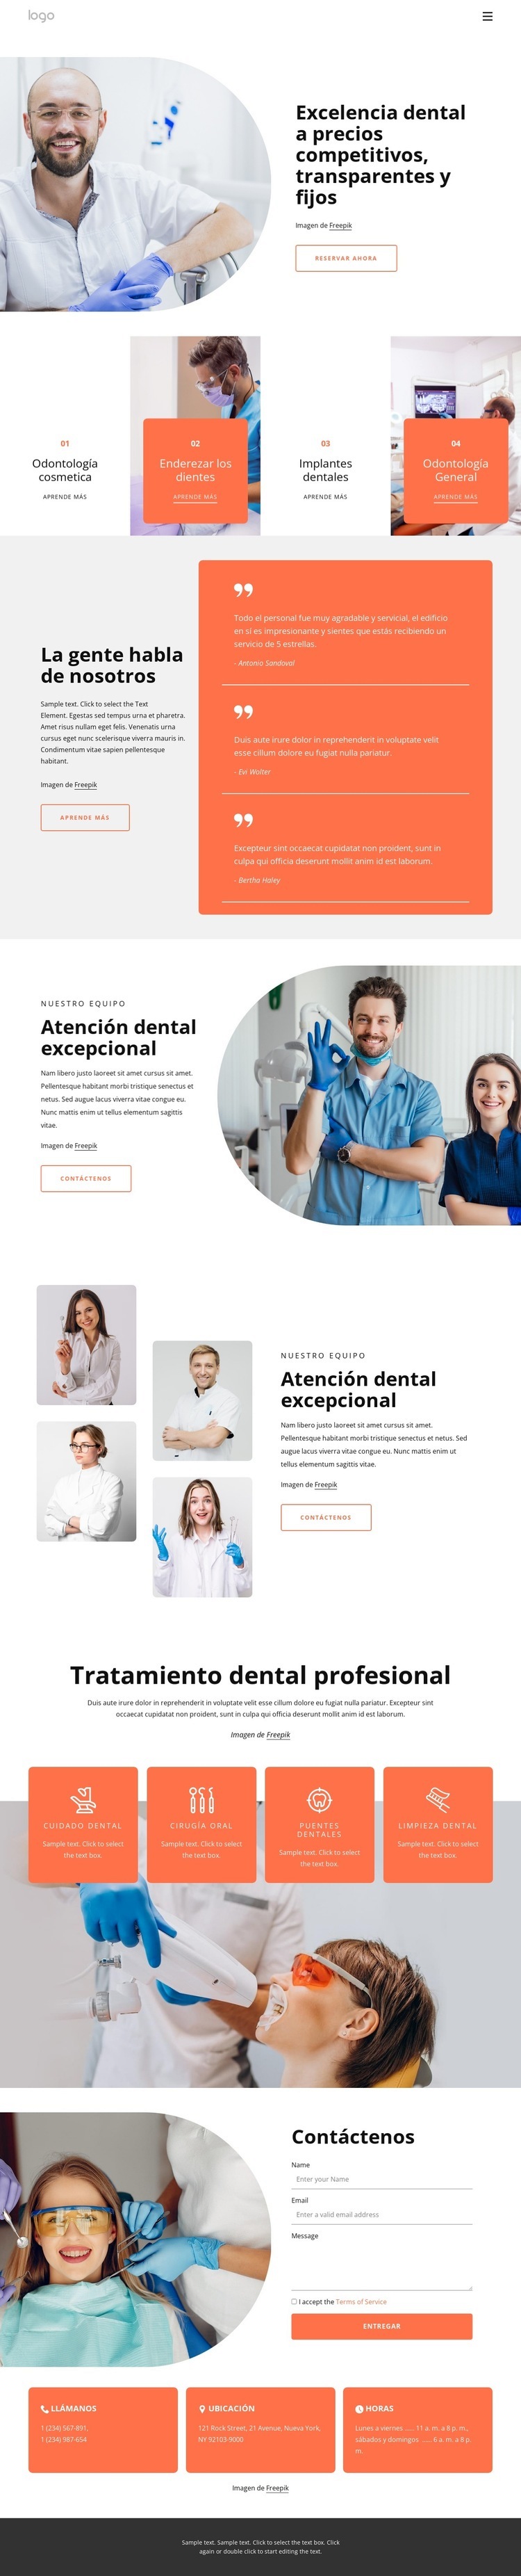 Excelencia dental Maqueta de sitio web